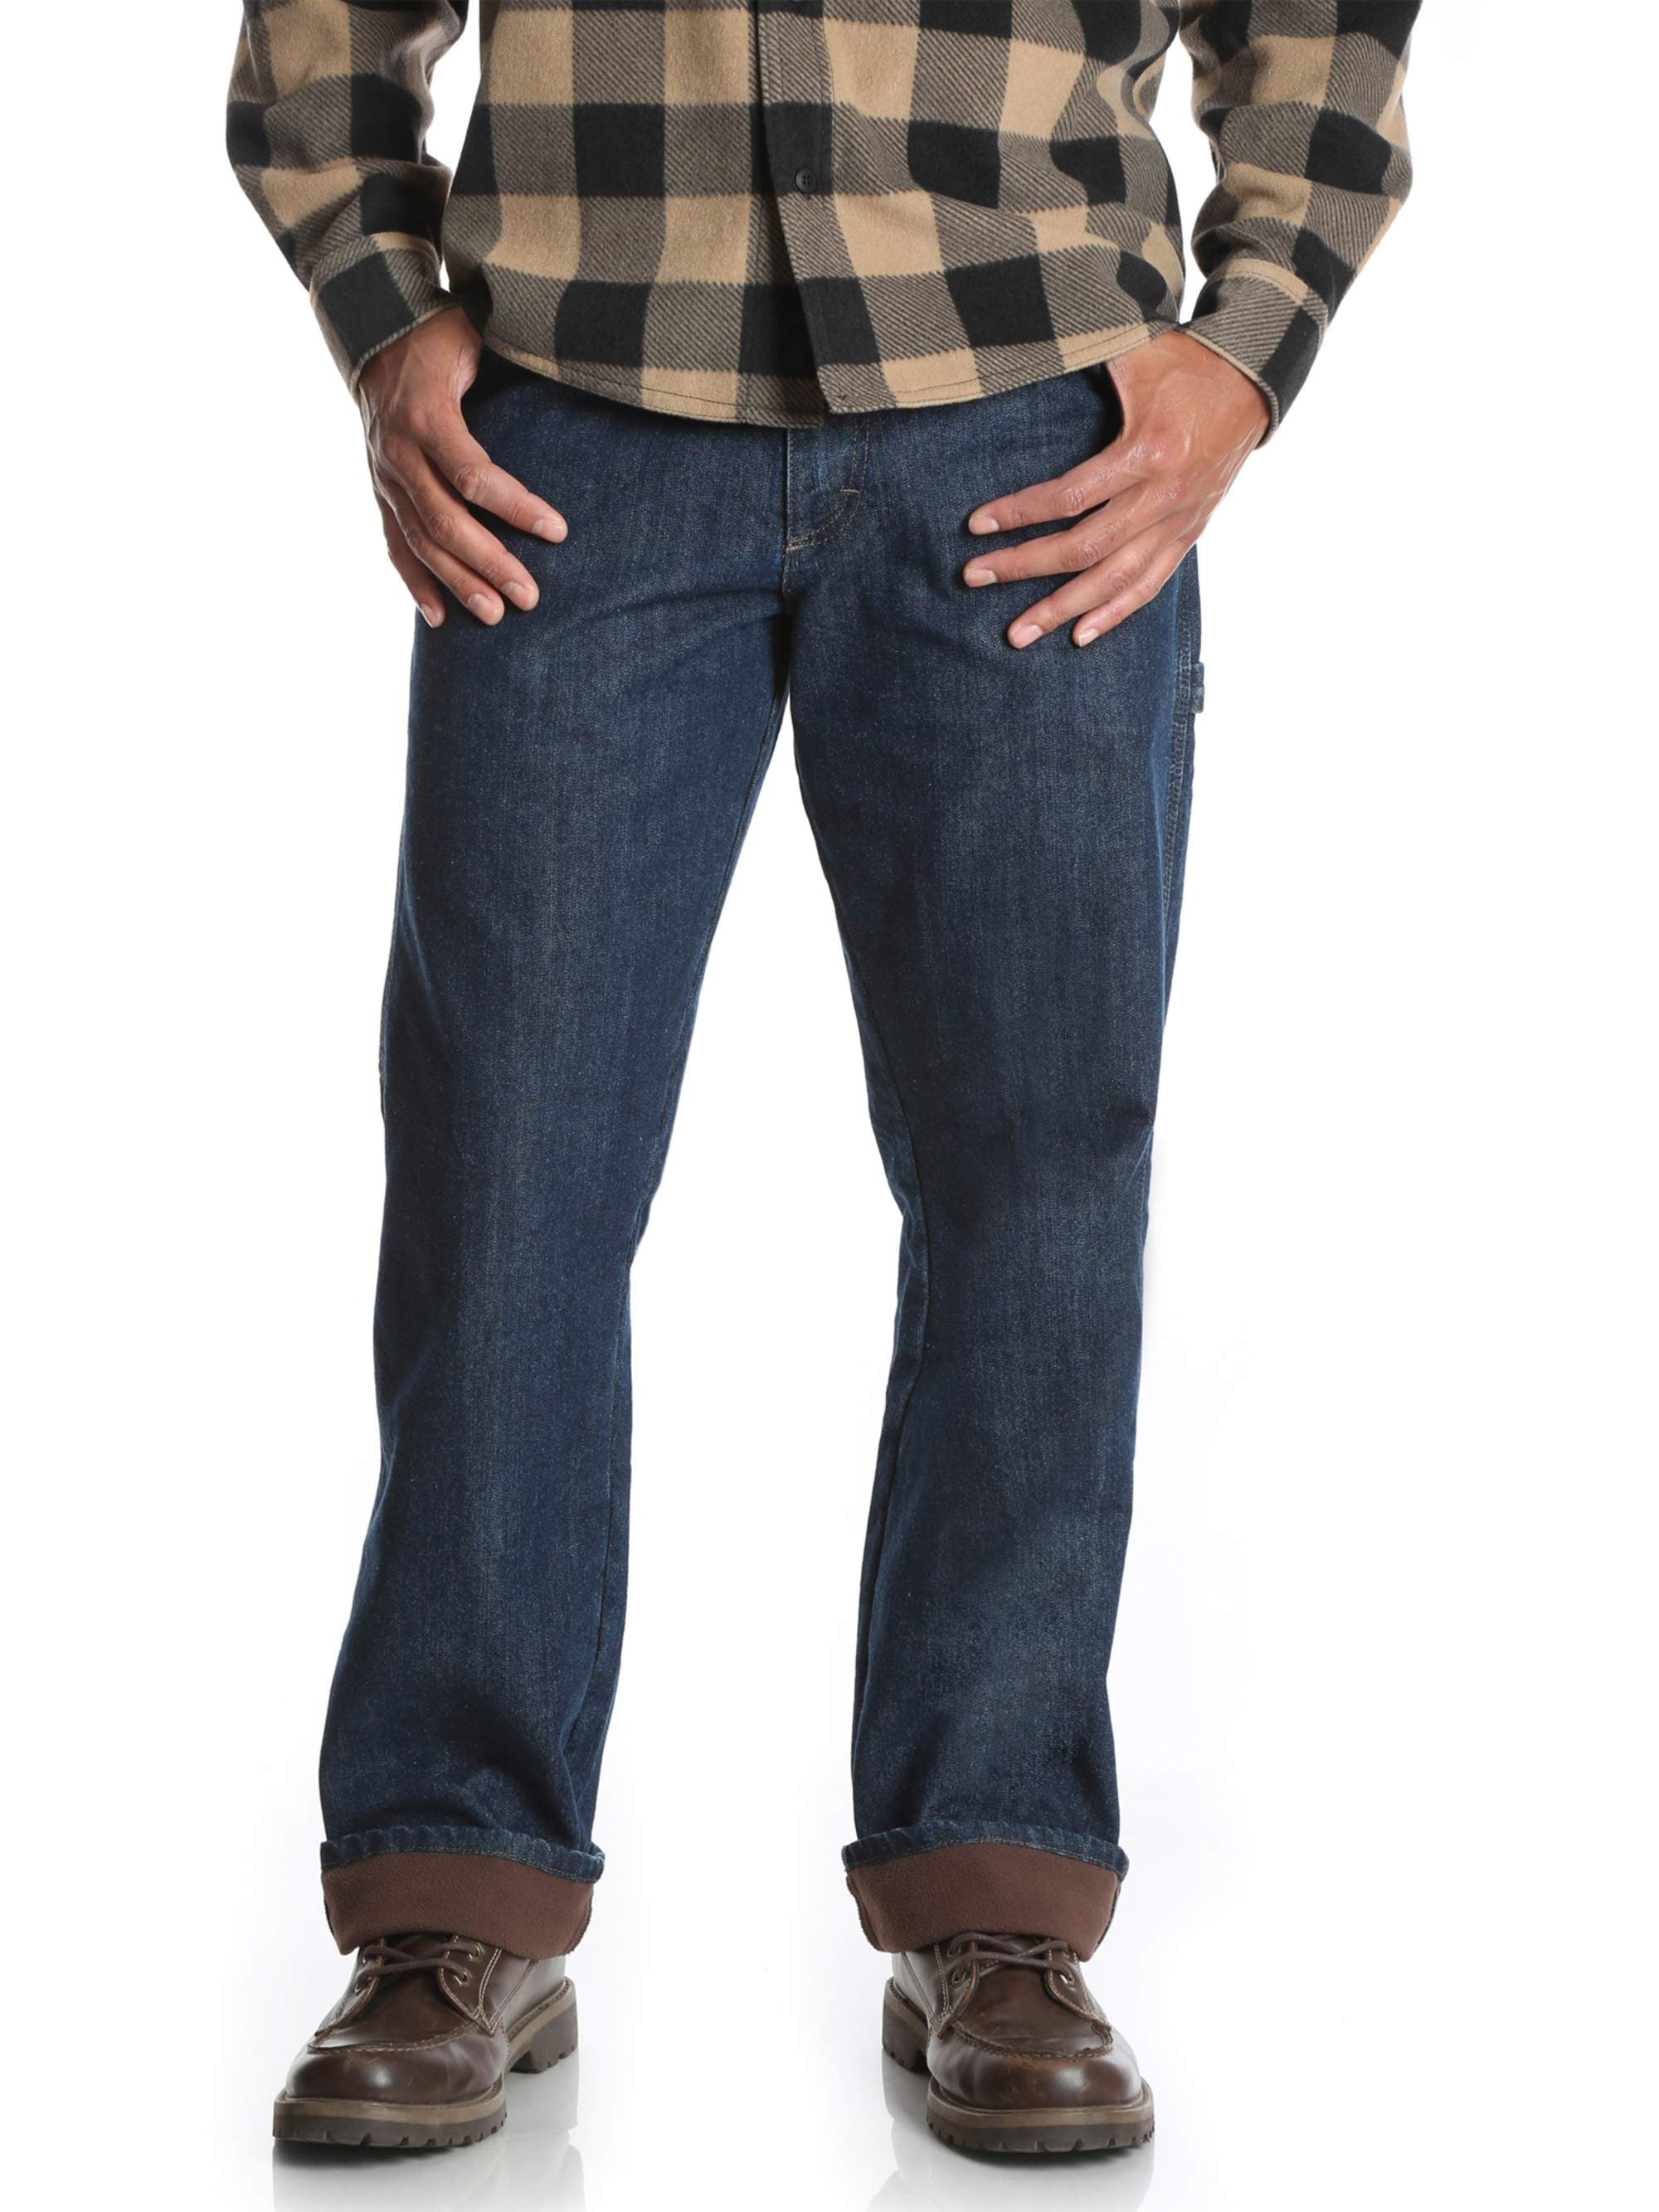 fleece lined jeans walmart